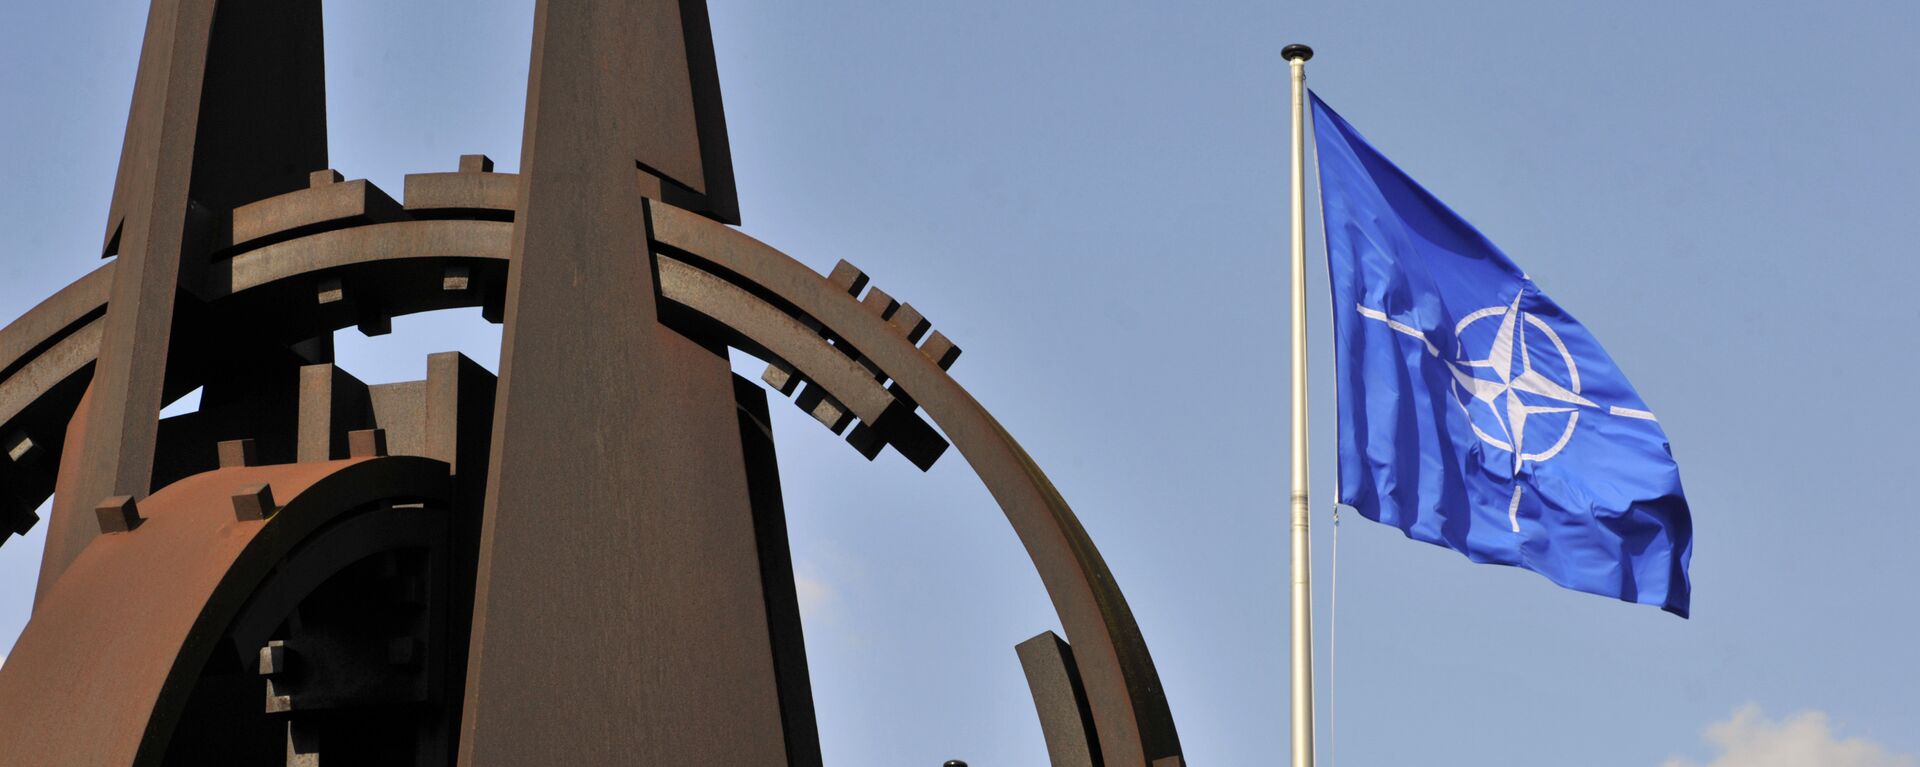 Эмблема и флаг НАТО перед зданием Альянса в Брюсселе - Sputnik Azərbaycan, 1920, 29.11.2019